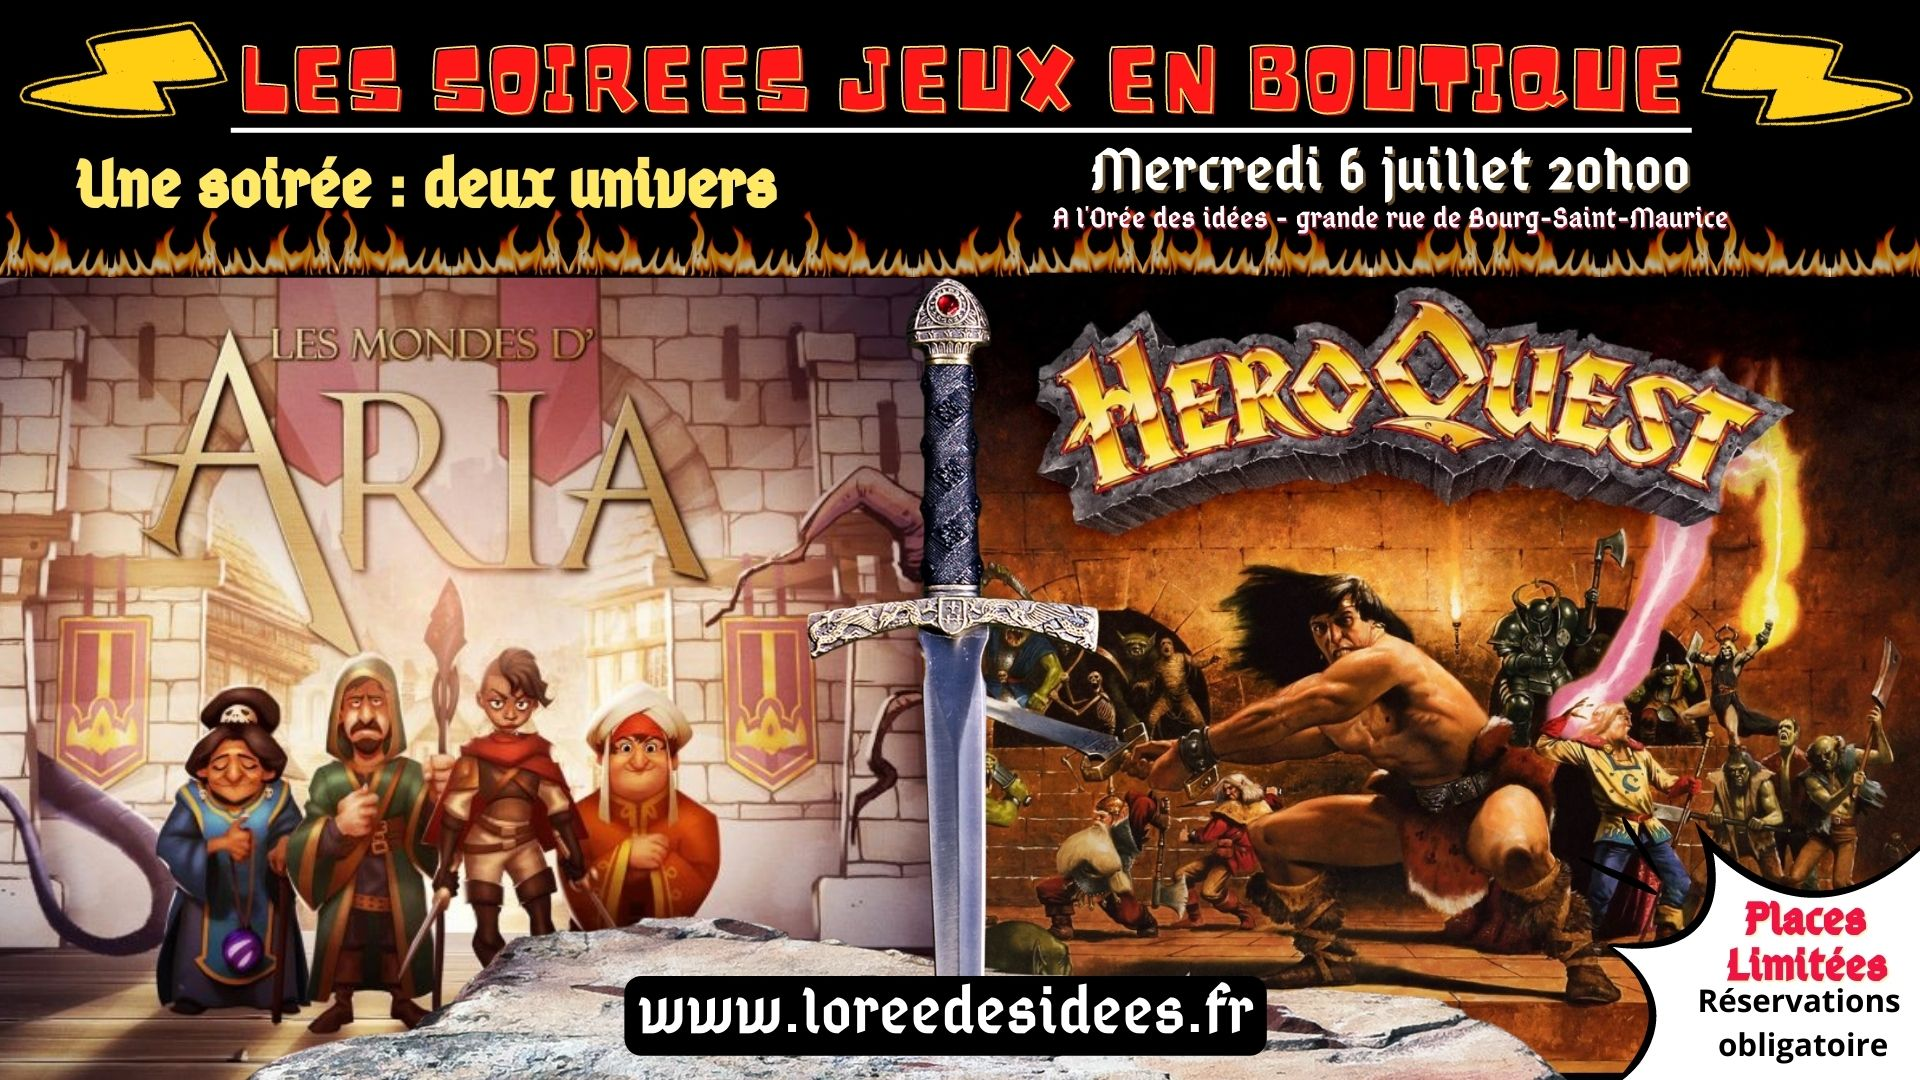 Soirée jeux en boutique - JDR les mondes d'aria - Dungeon Craweler Hero Quest